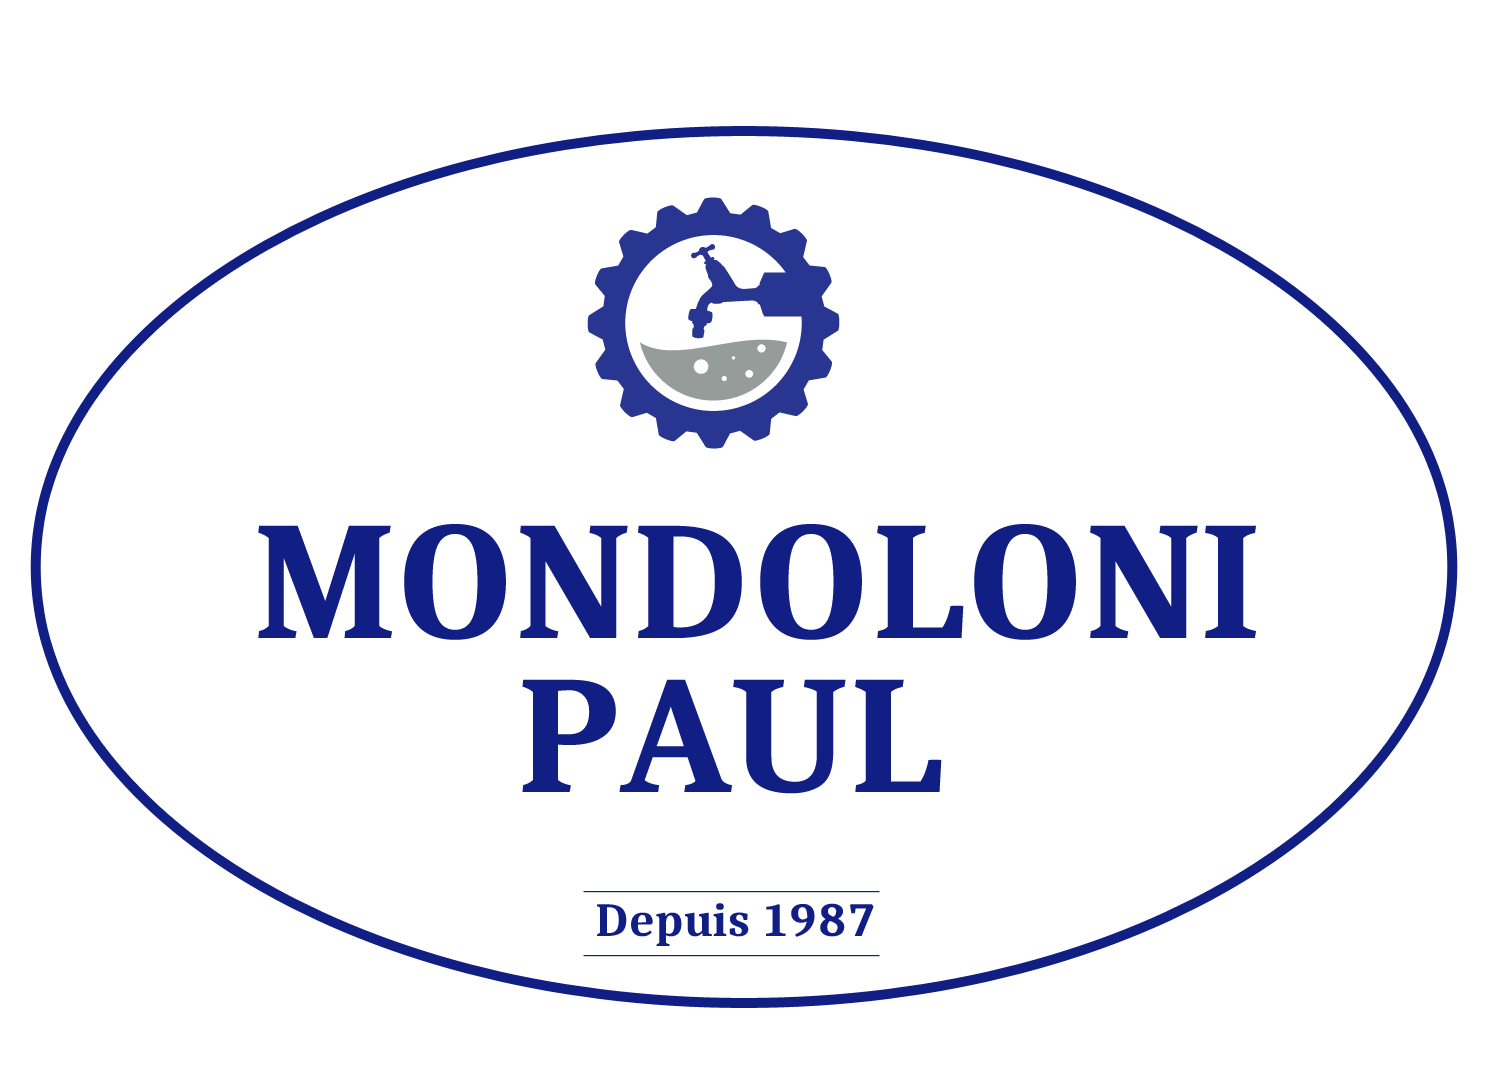  PAUL MONDOLONI 